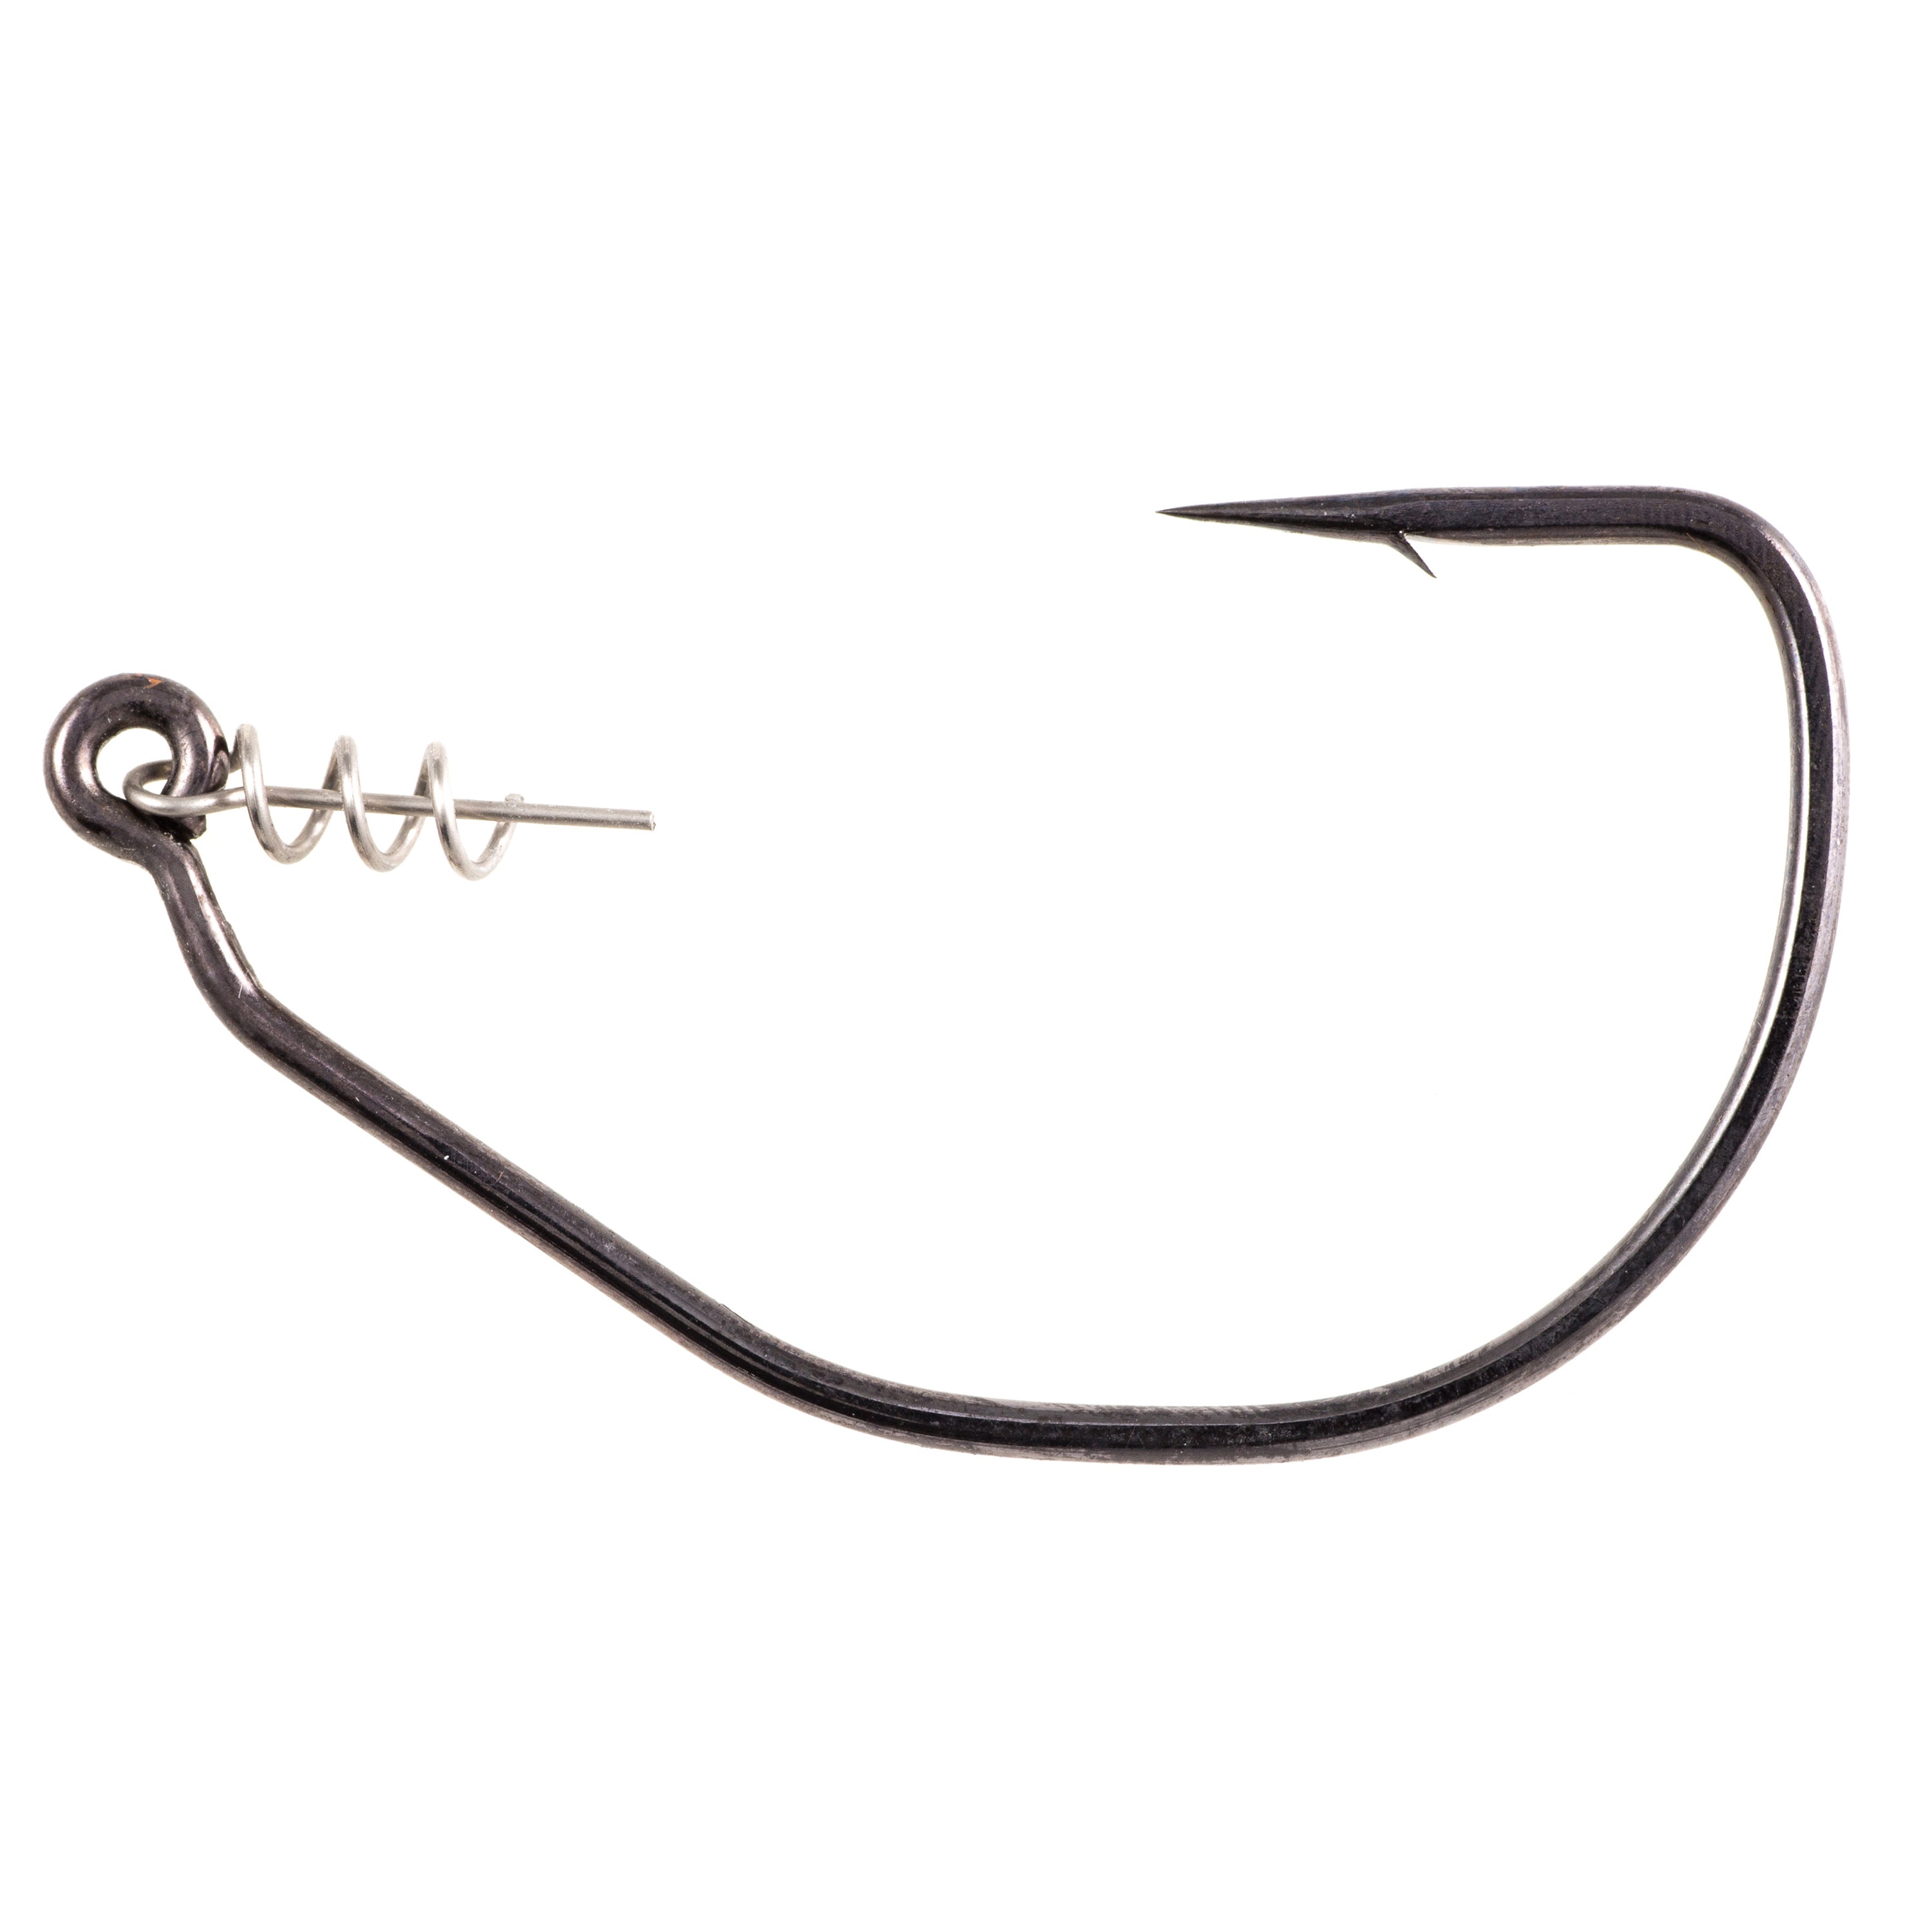 Owner Twistlock Beast Hook 6/0